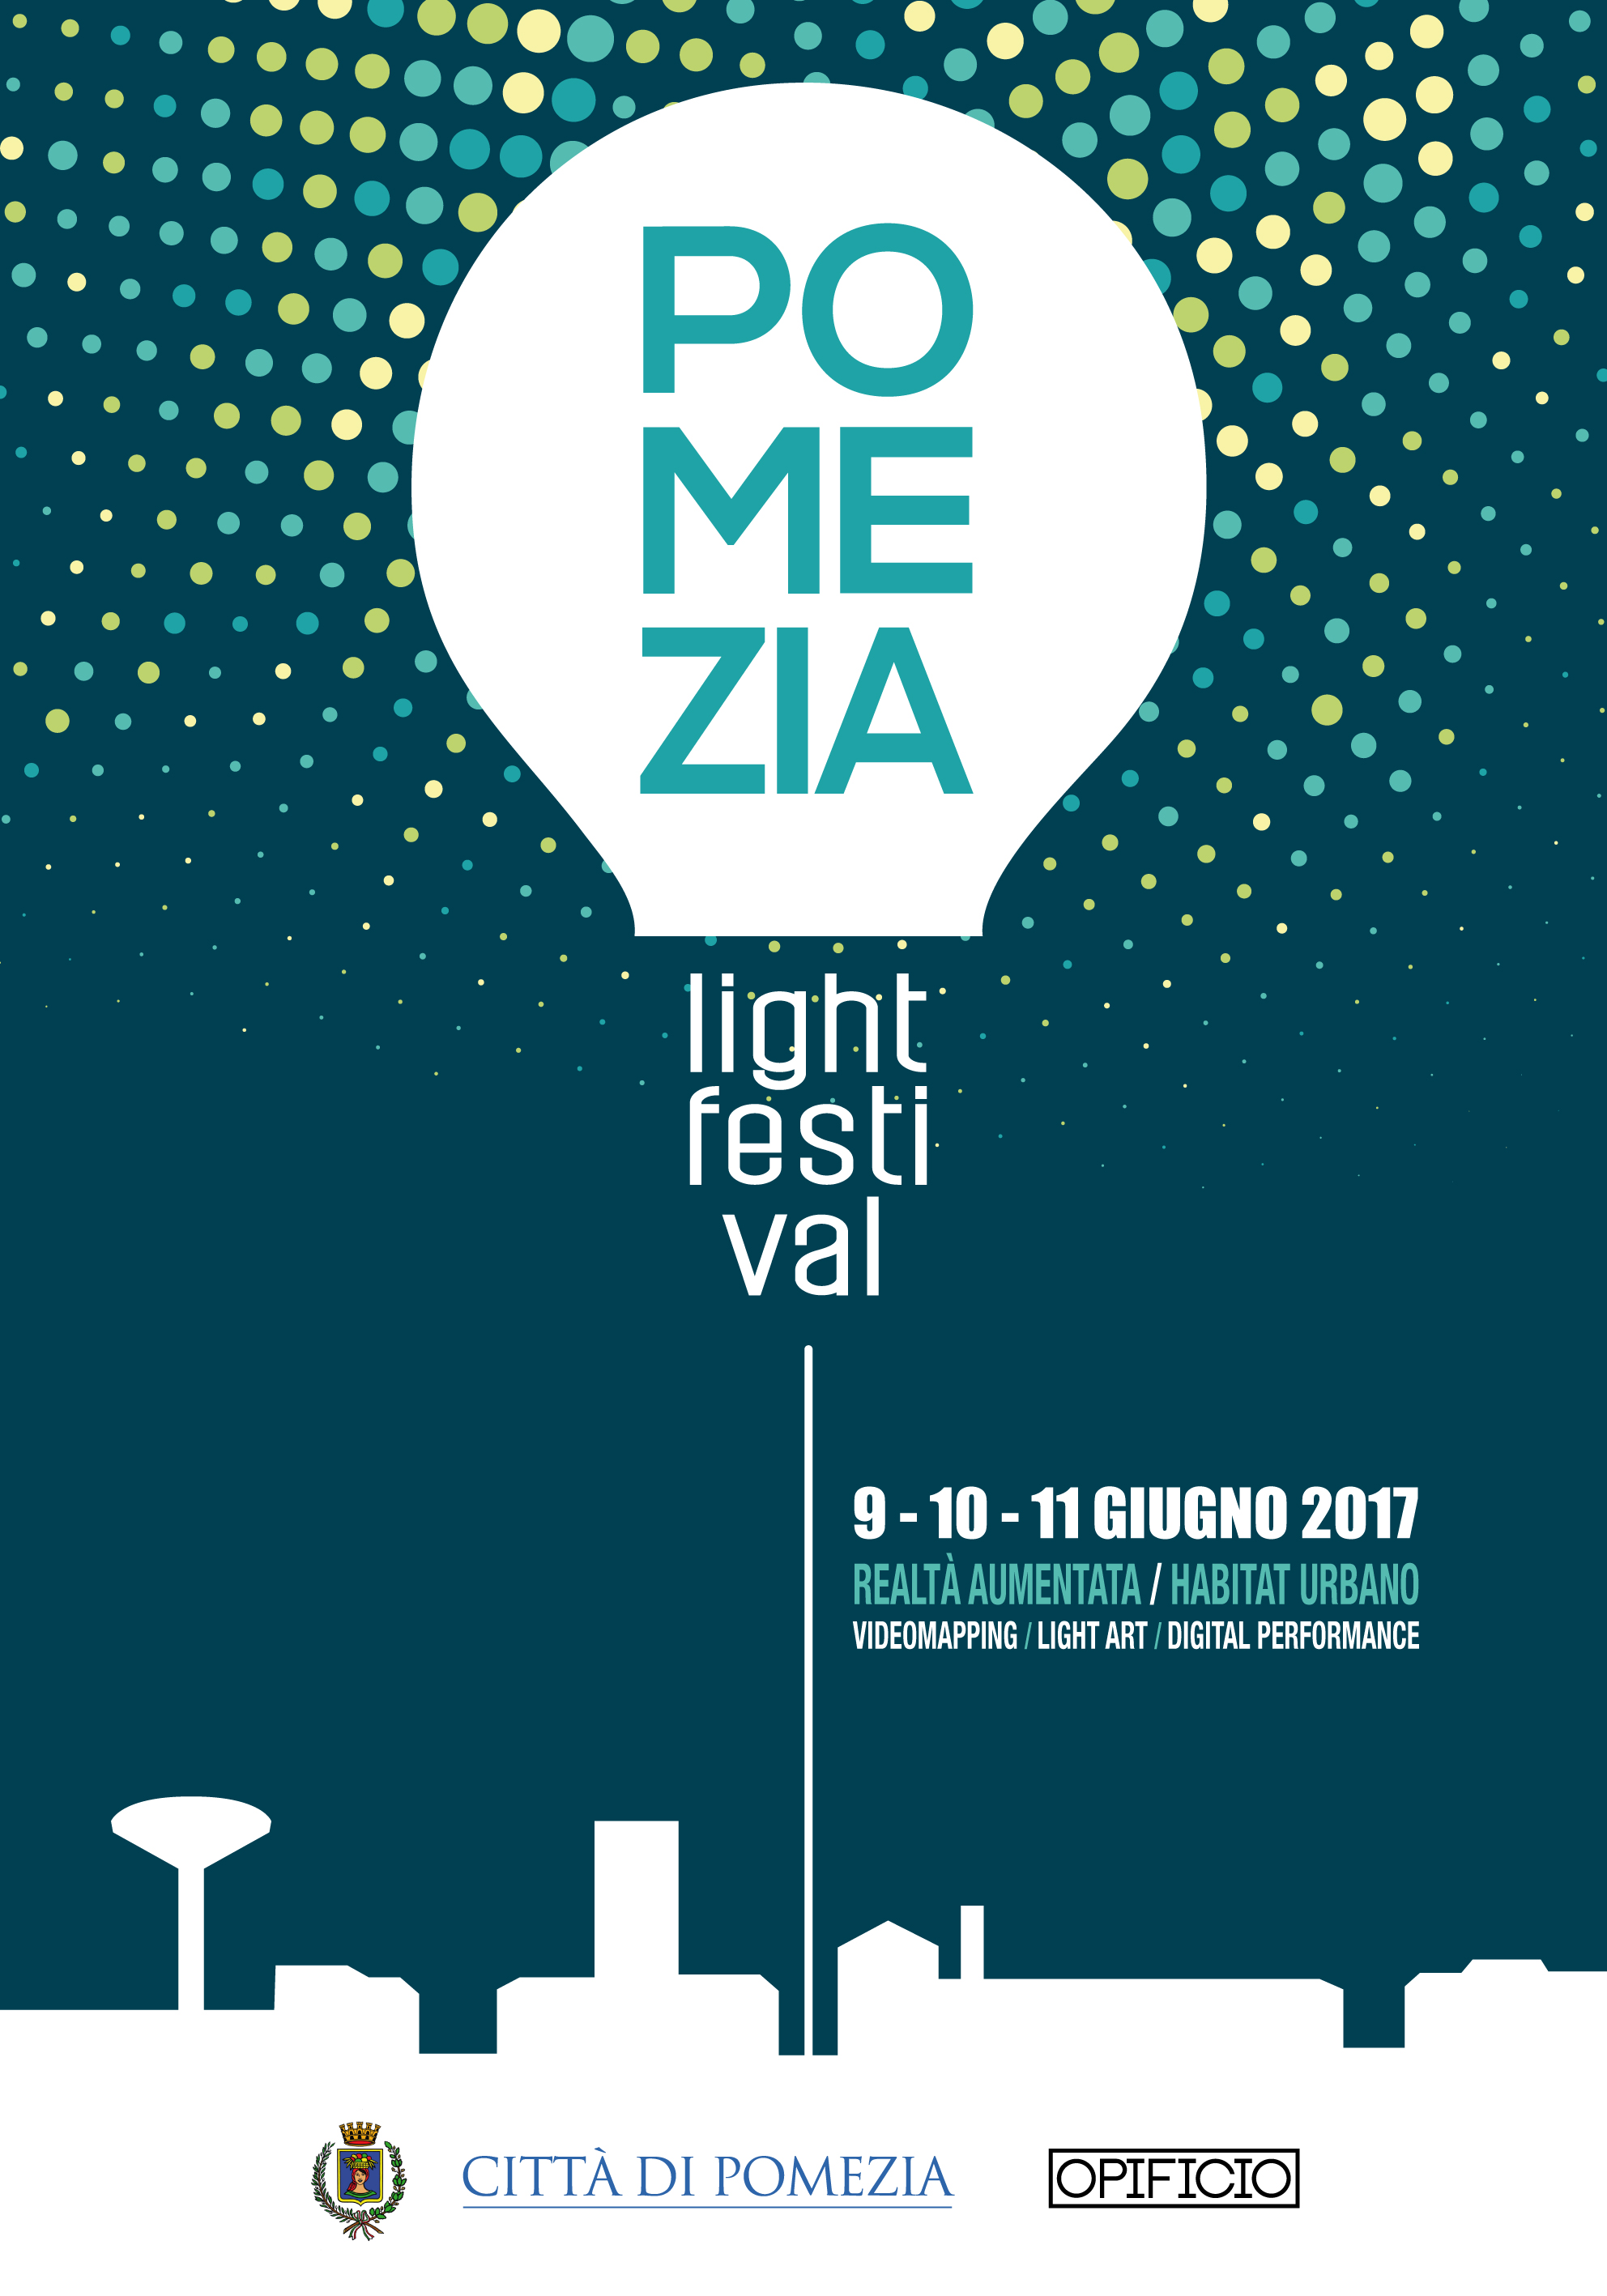 Il Pomezia Light Festival 2017 apre una stagione ricca di novità ed eventi imperdibili